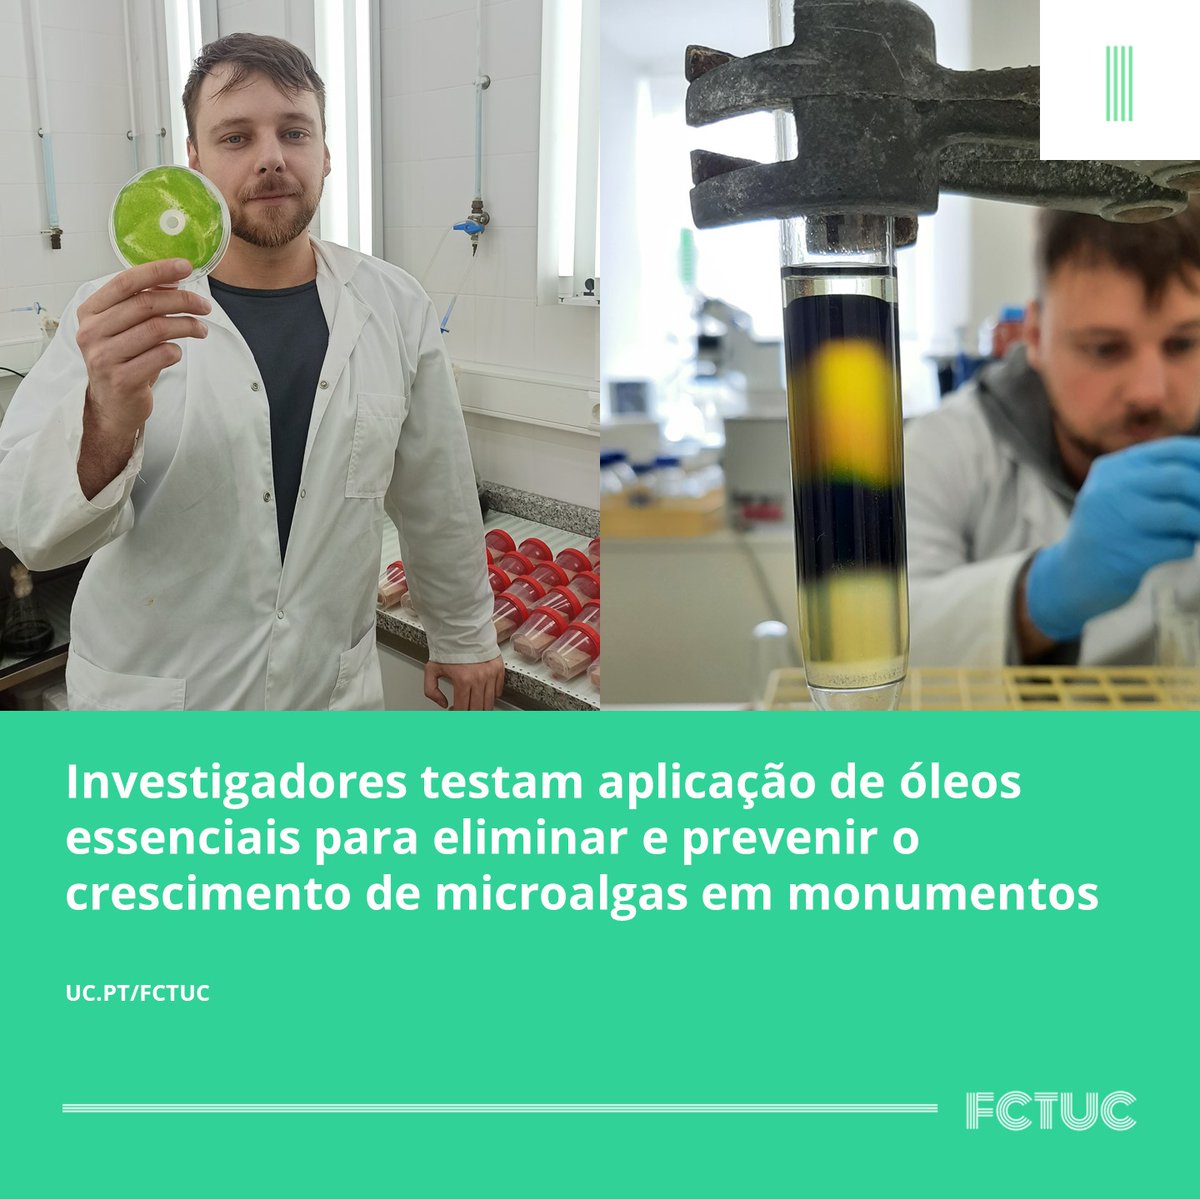 Investigadores testam aplicação de óleos essenciais para eliminar e prevenir o crescimento de microalgas em monumentos. Saiba mais em: uc.pt/fctuc/noticias…